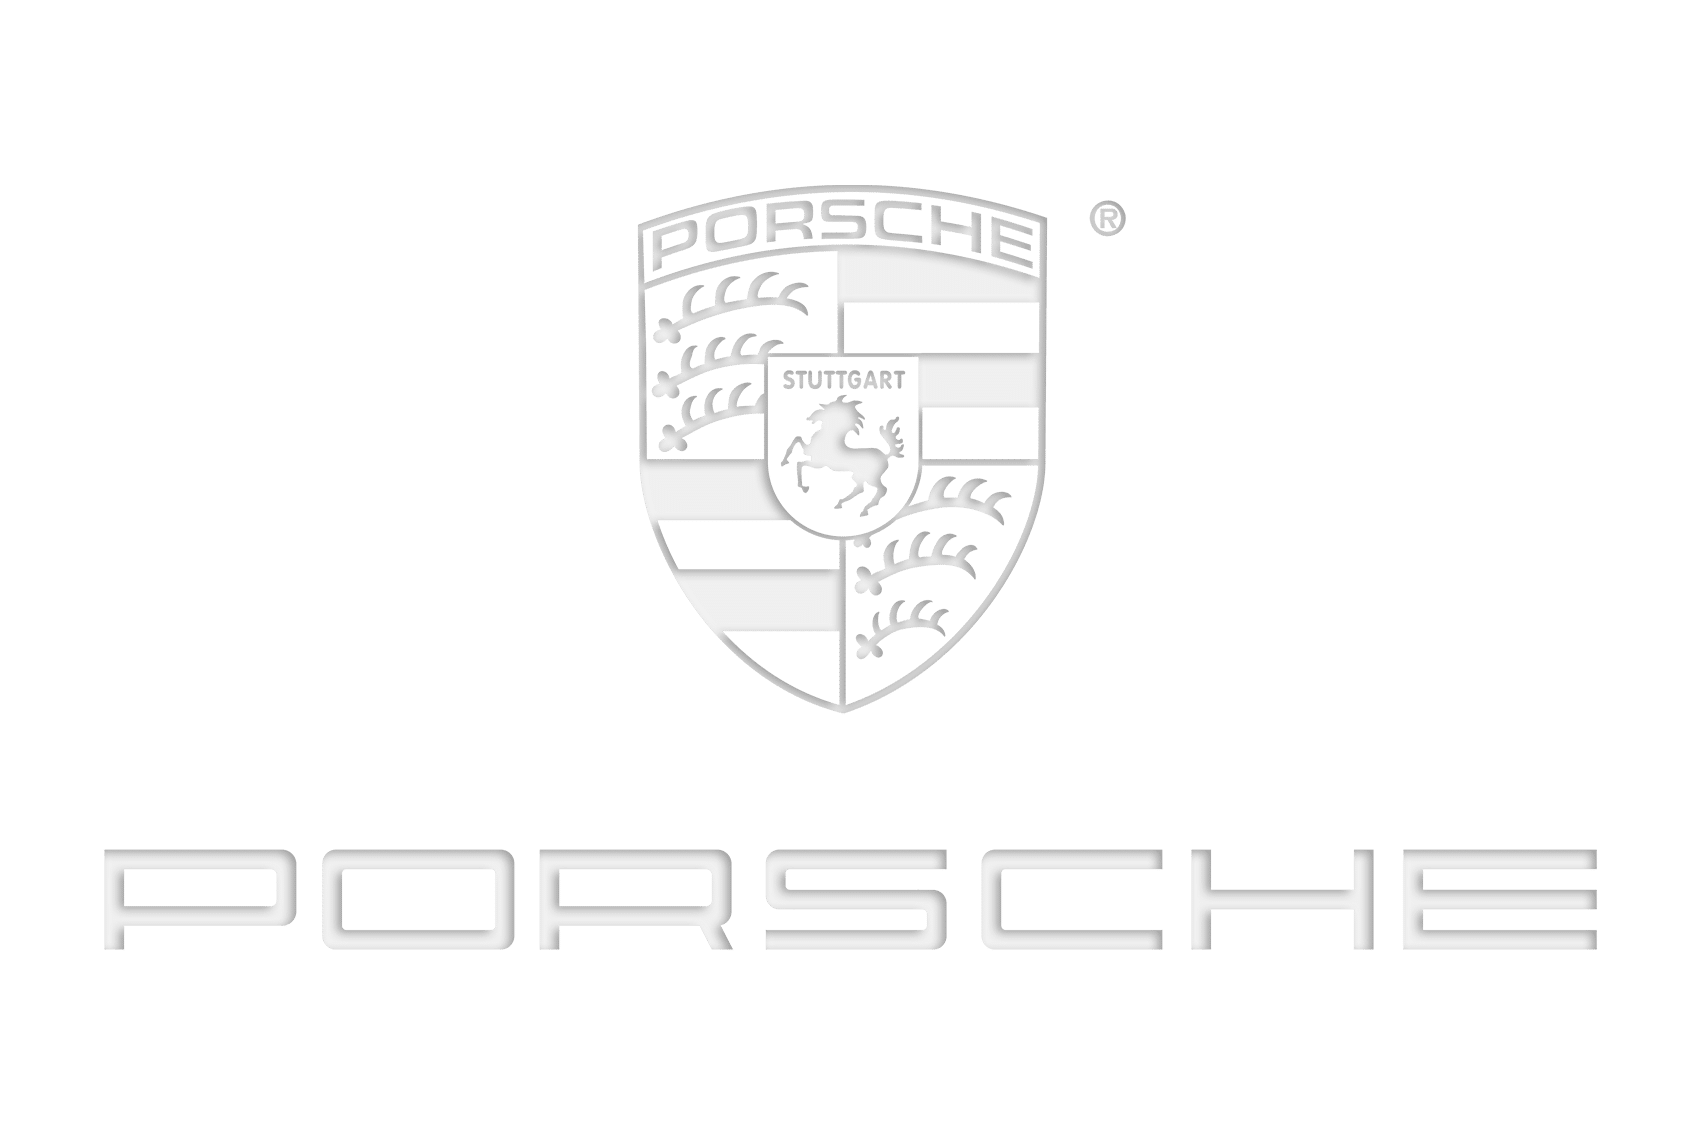 Porsche ist ein zufriedener Kunde von Pivotti VIP Liner Berlin